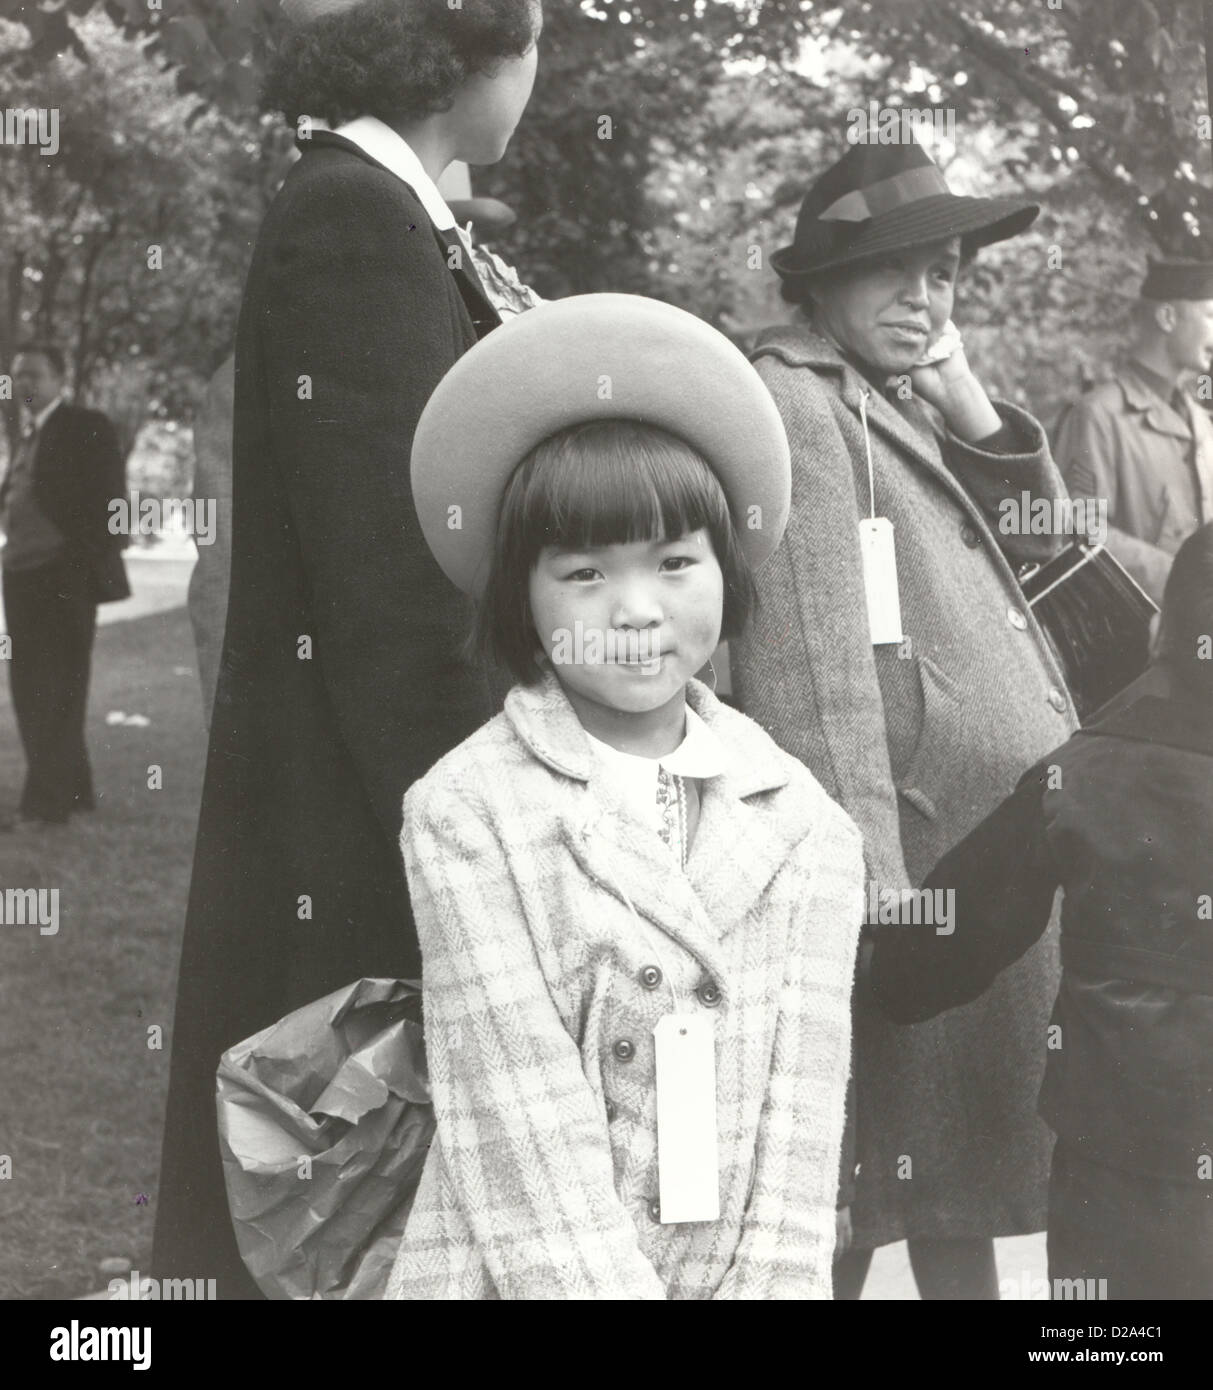 Hayward, California, joven miembro de la familia evacuada esperando el autobús de evacuación evacuados ascendencia japonesa se alojarán en guerra Foto de stock